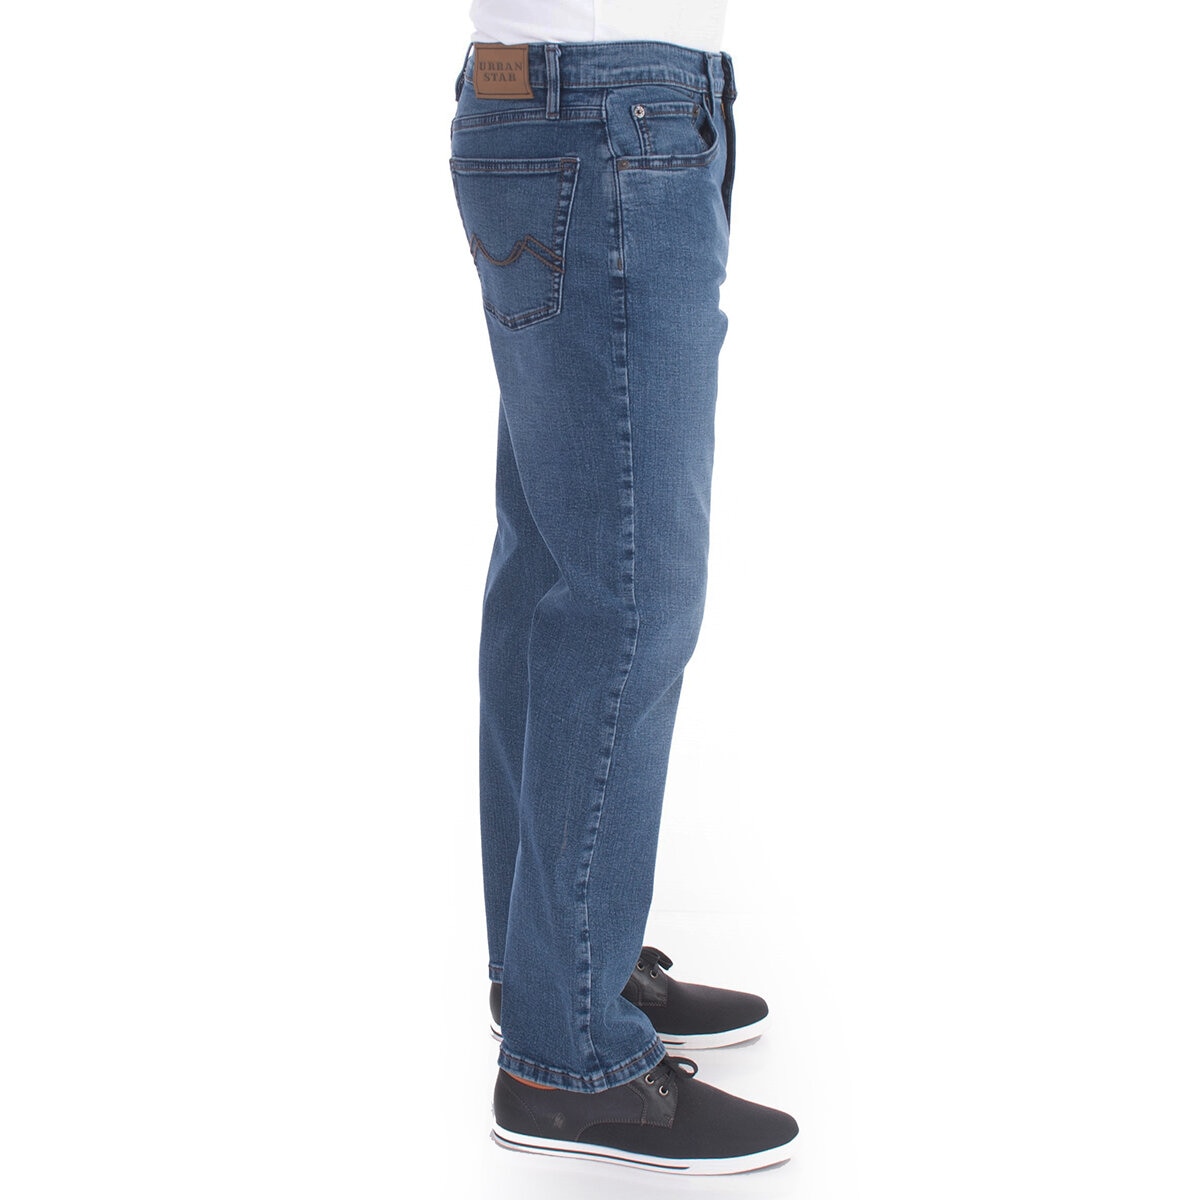 Urban Star Jeans para Caballero Azul Medio 36x34